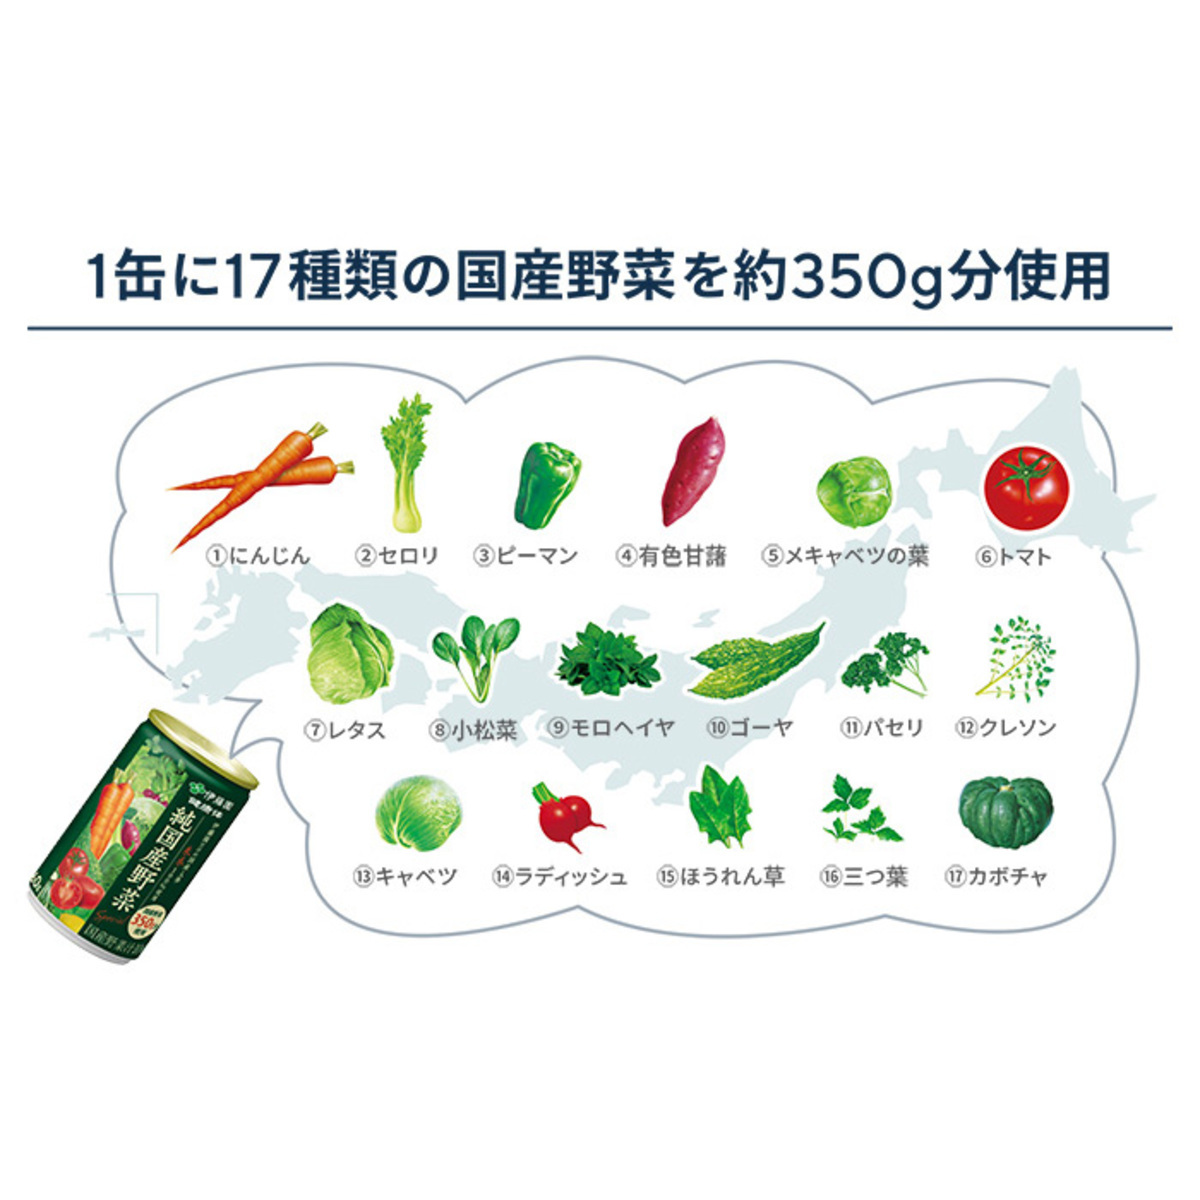 伊藤園健康体 1日分の純国産野菜160g×30本 伊藤園 - QVC.jp